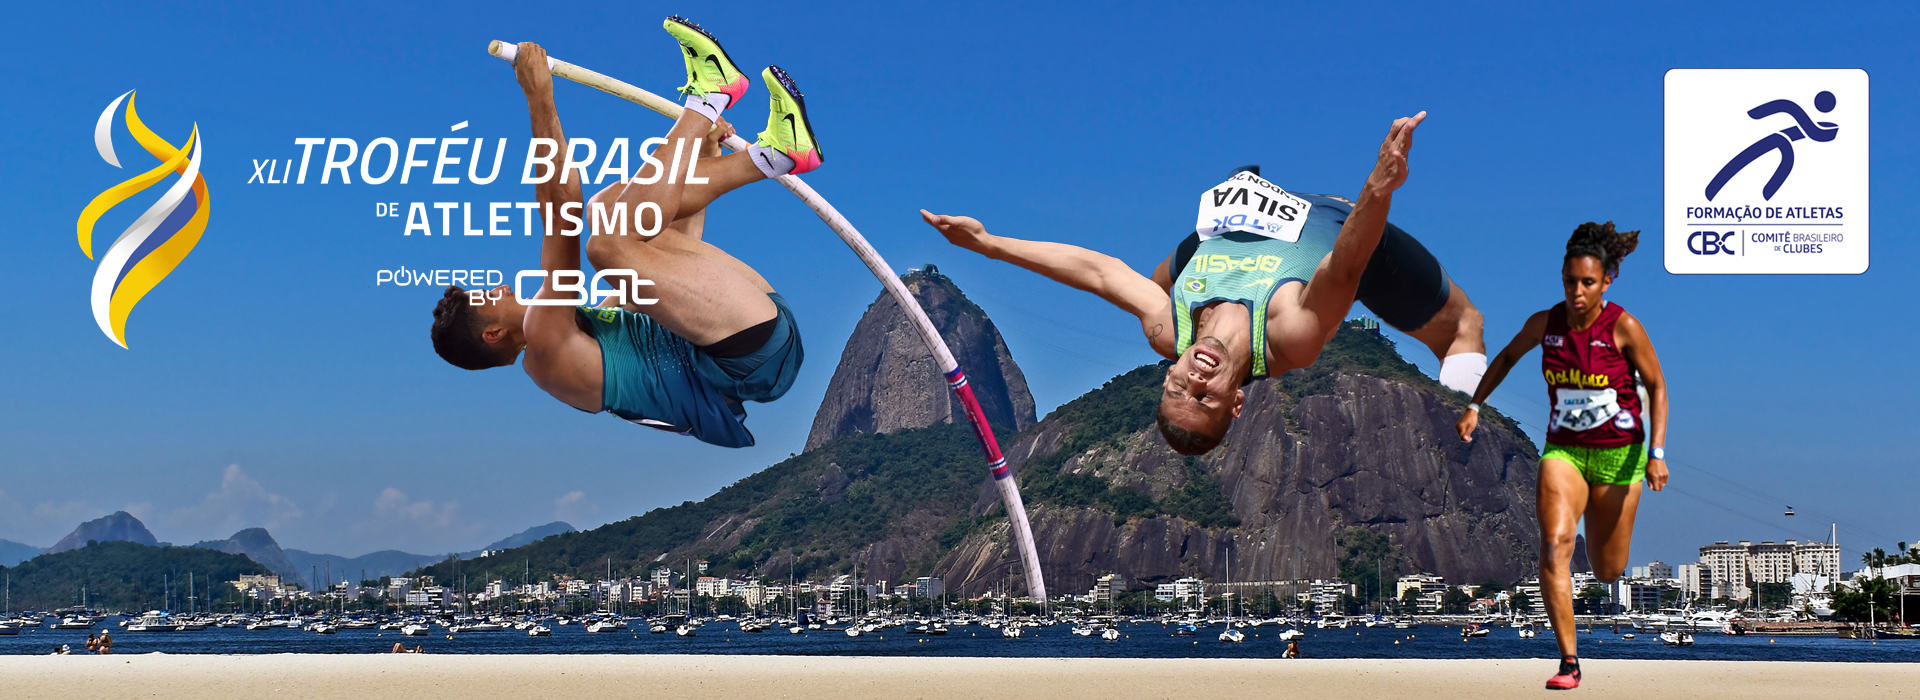 CBAt confirma Troféu Brasil de Atletismo no Rio de Janeiro/RJ